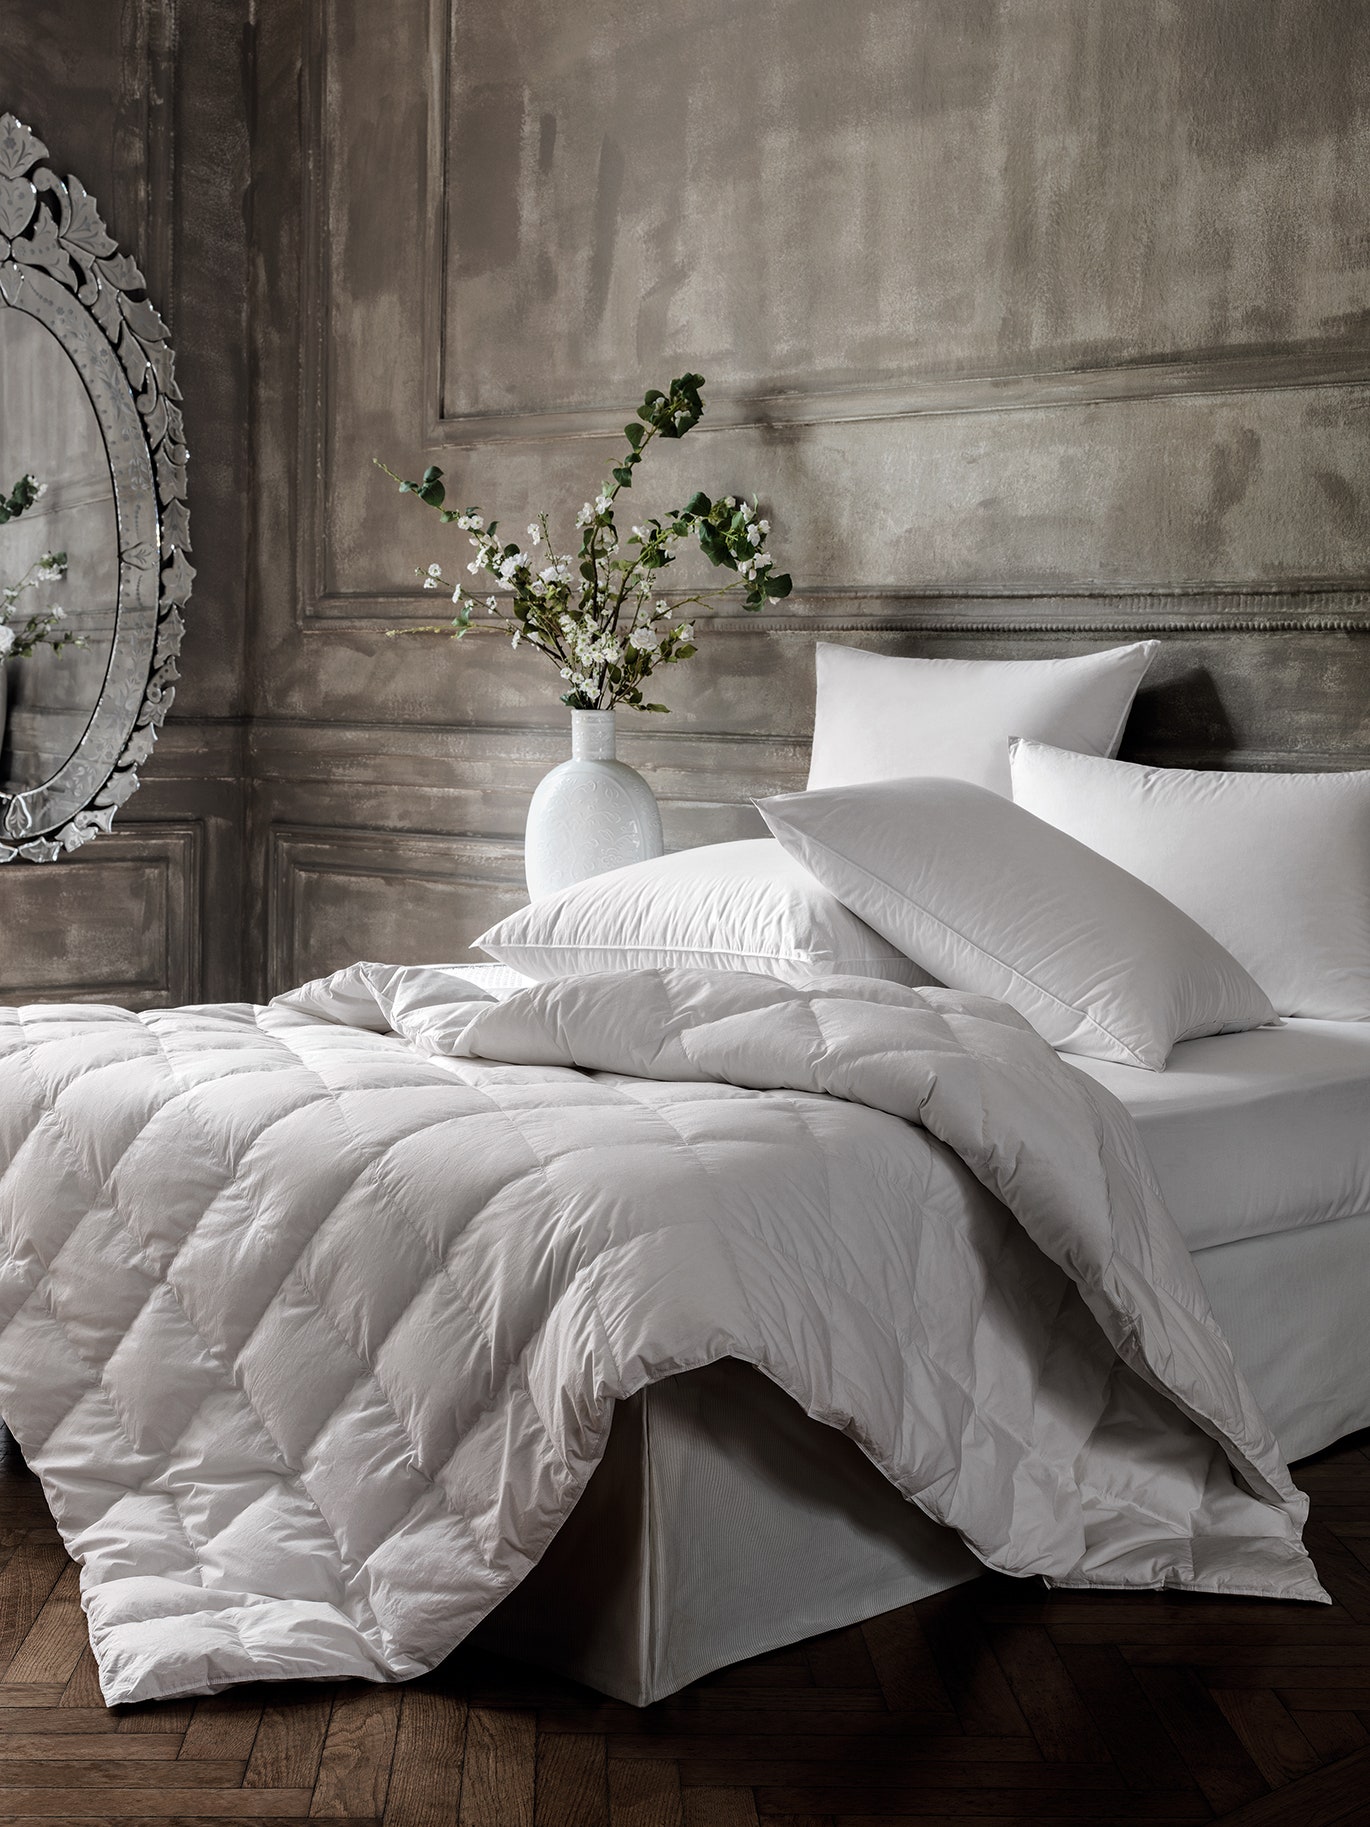 Как выбрать одеяла и подушки для здорового сна пошаговая инструкция и сравнение разных наполнителей